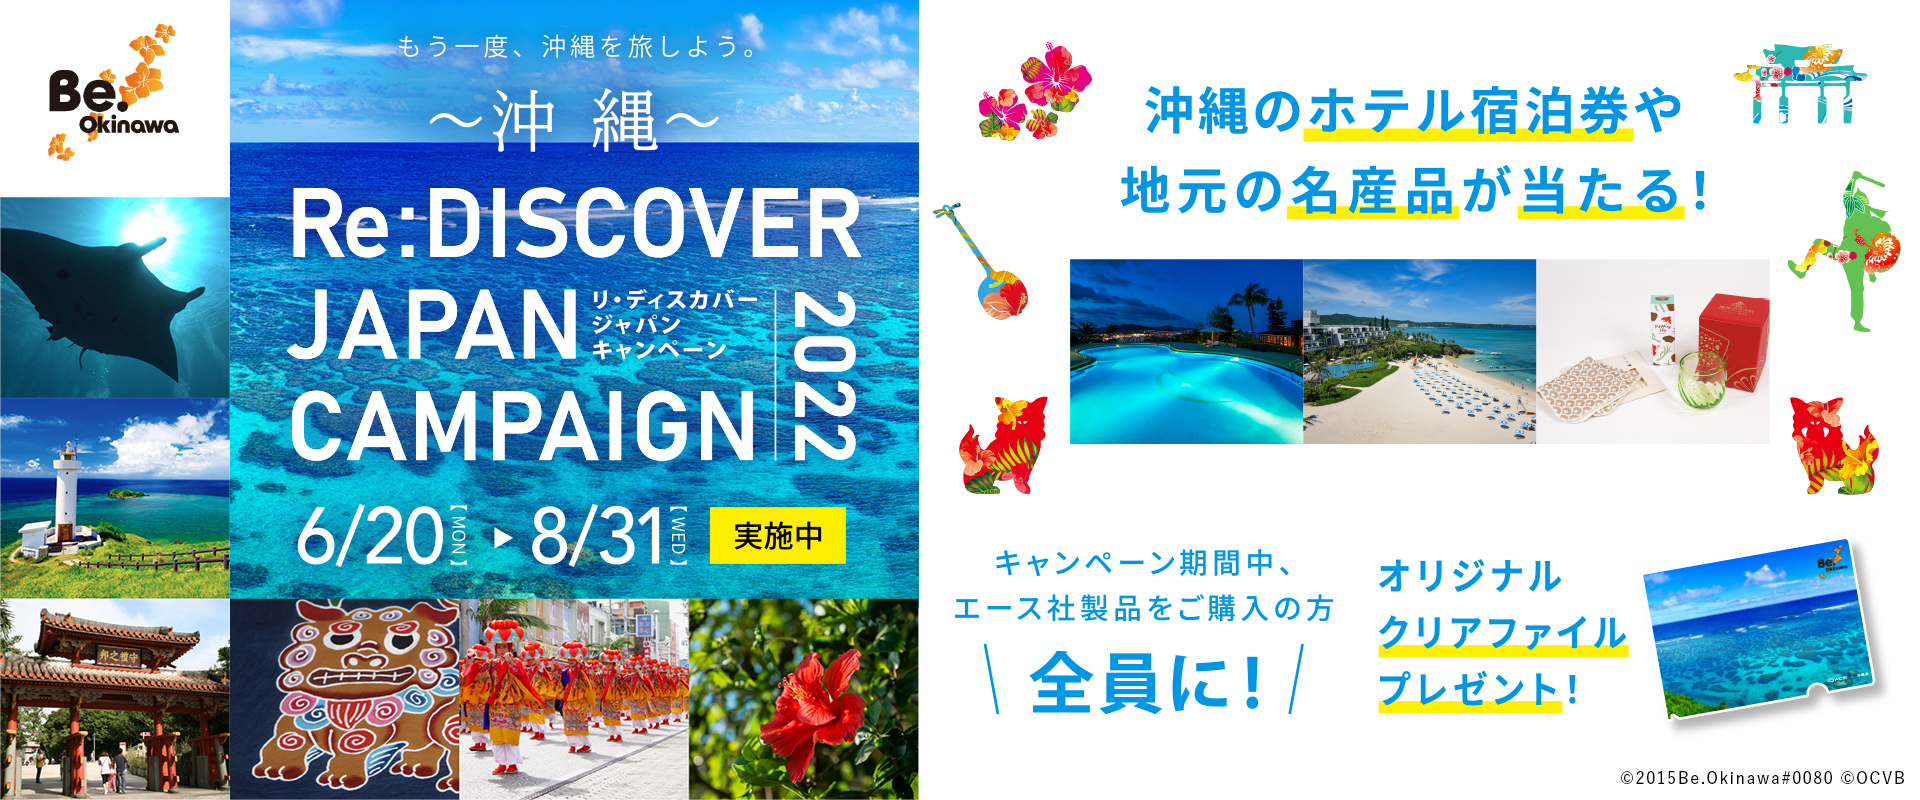 リ・ディスカバー・ジャパン沖縄キャンペーン